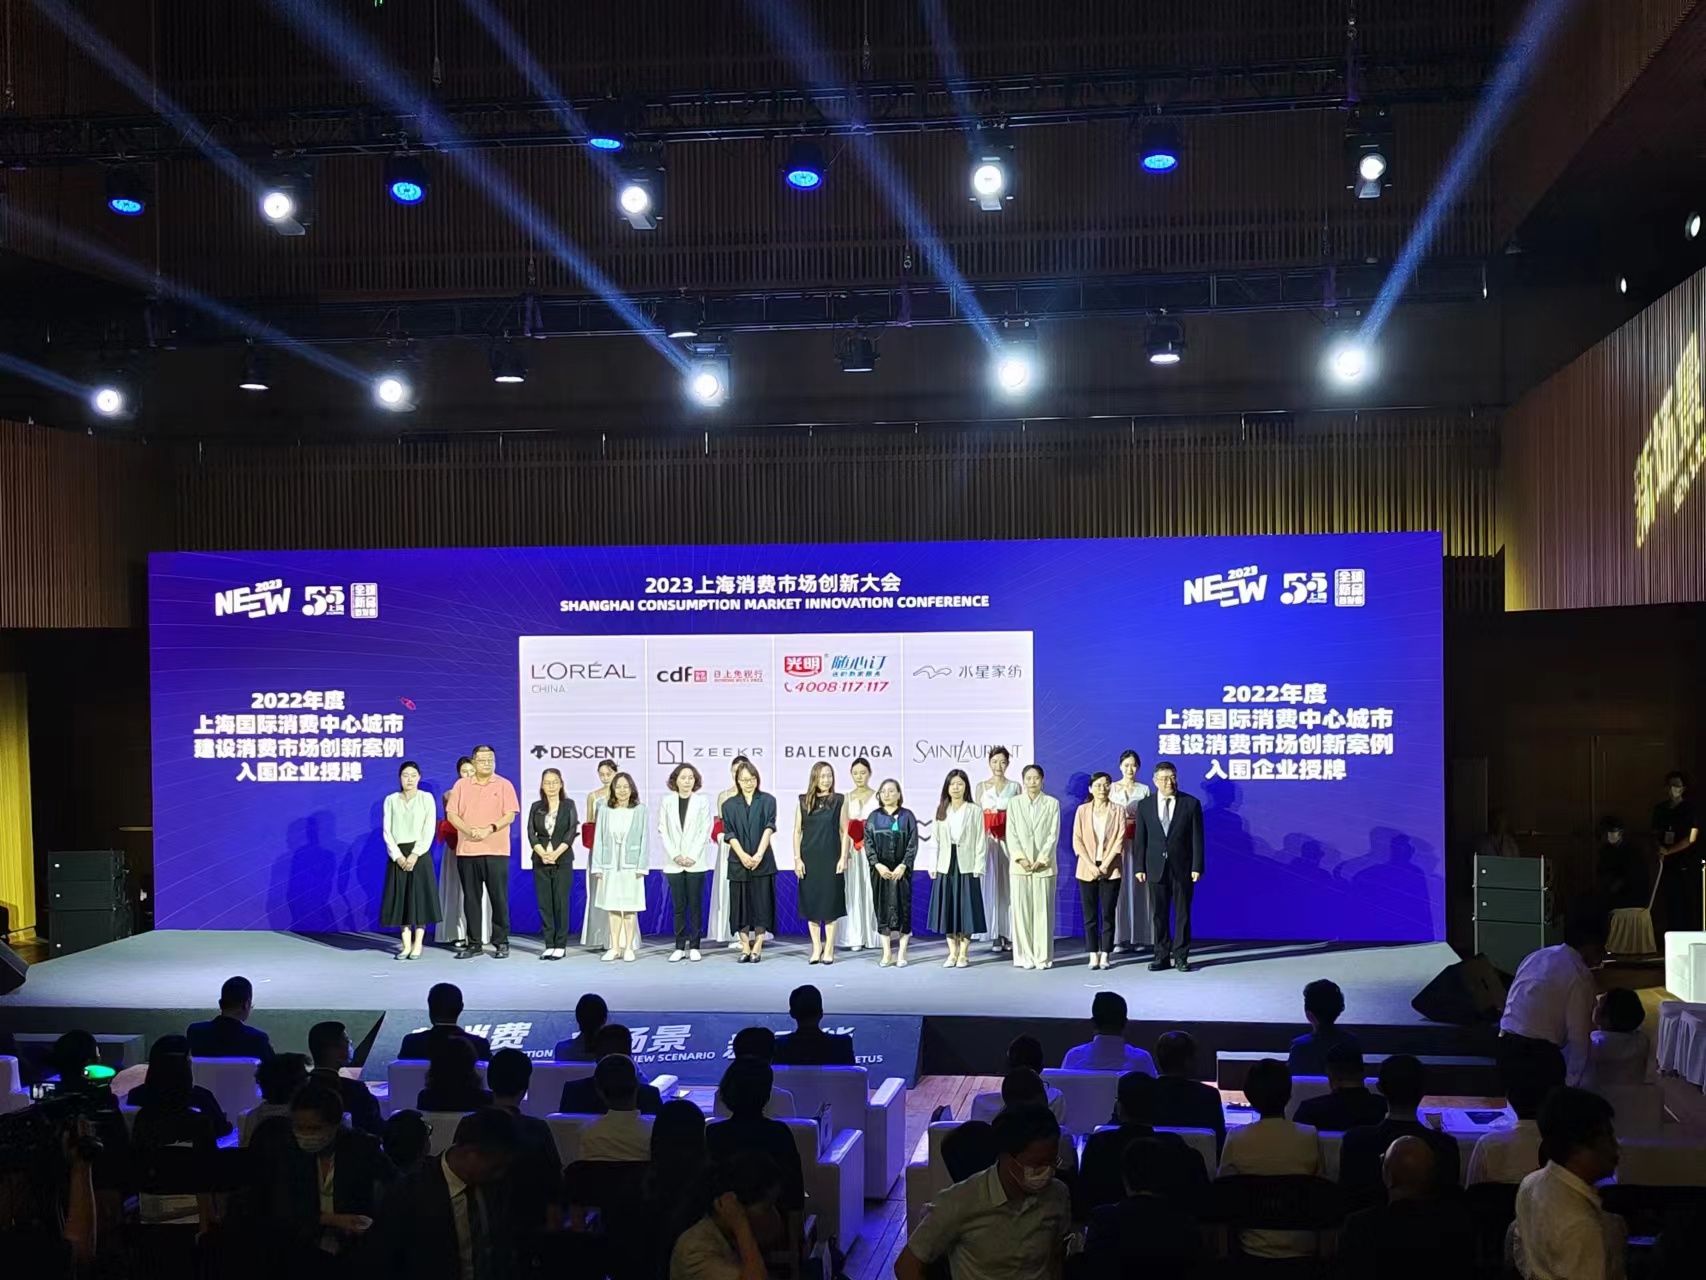 2023上海消费市场创新大会在沪举办。劳动报记者陆燕婷 摄影